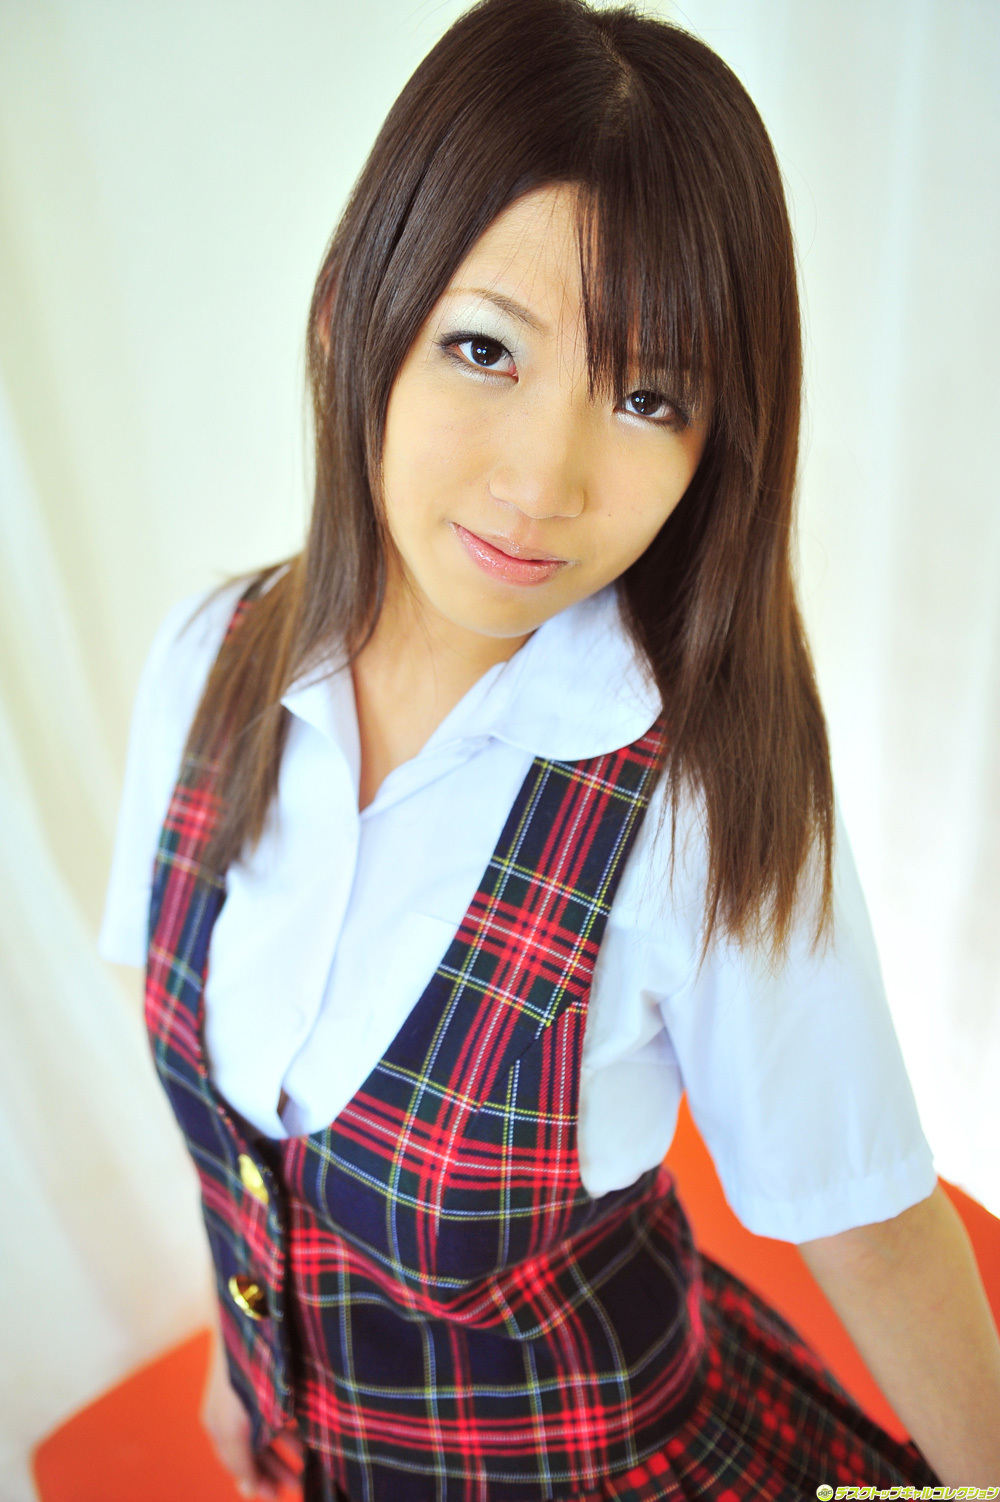 Yuko REI ozora [DGC] April 2012 no.1014 Sexy Japanese actress series